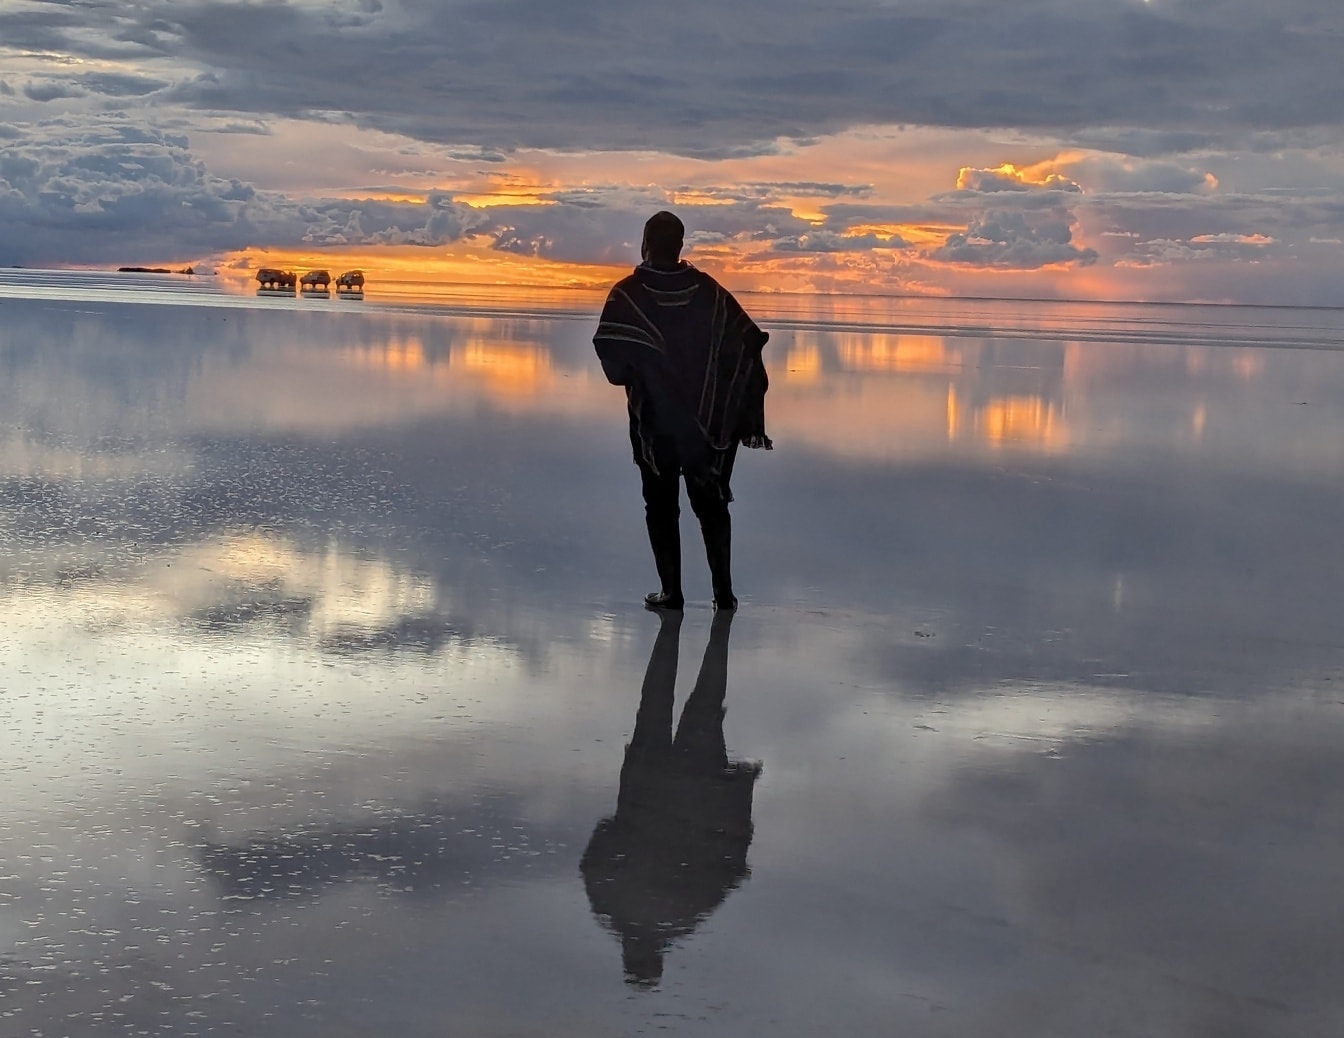 Mężczyzna stojący na wodzie z pięknym zachodem słońca w tle odbijającym się na powierzchni wody